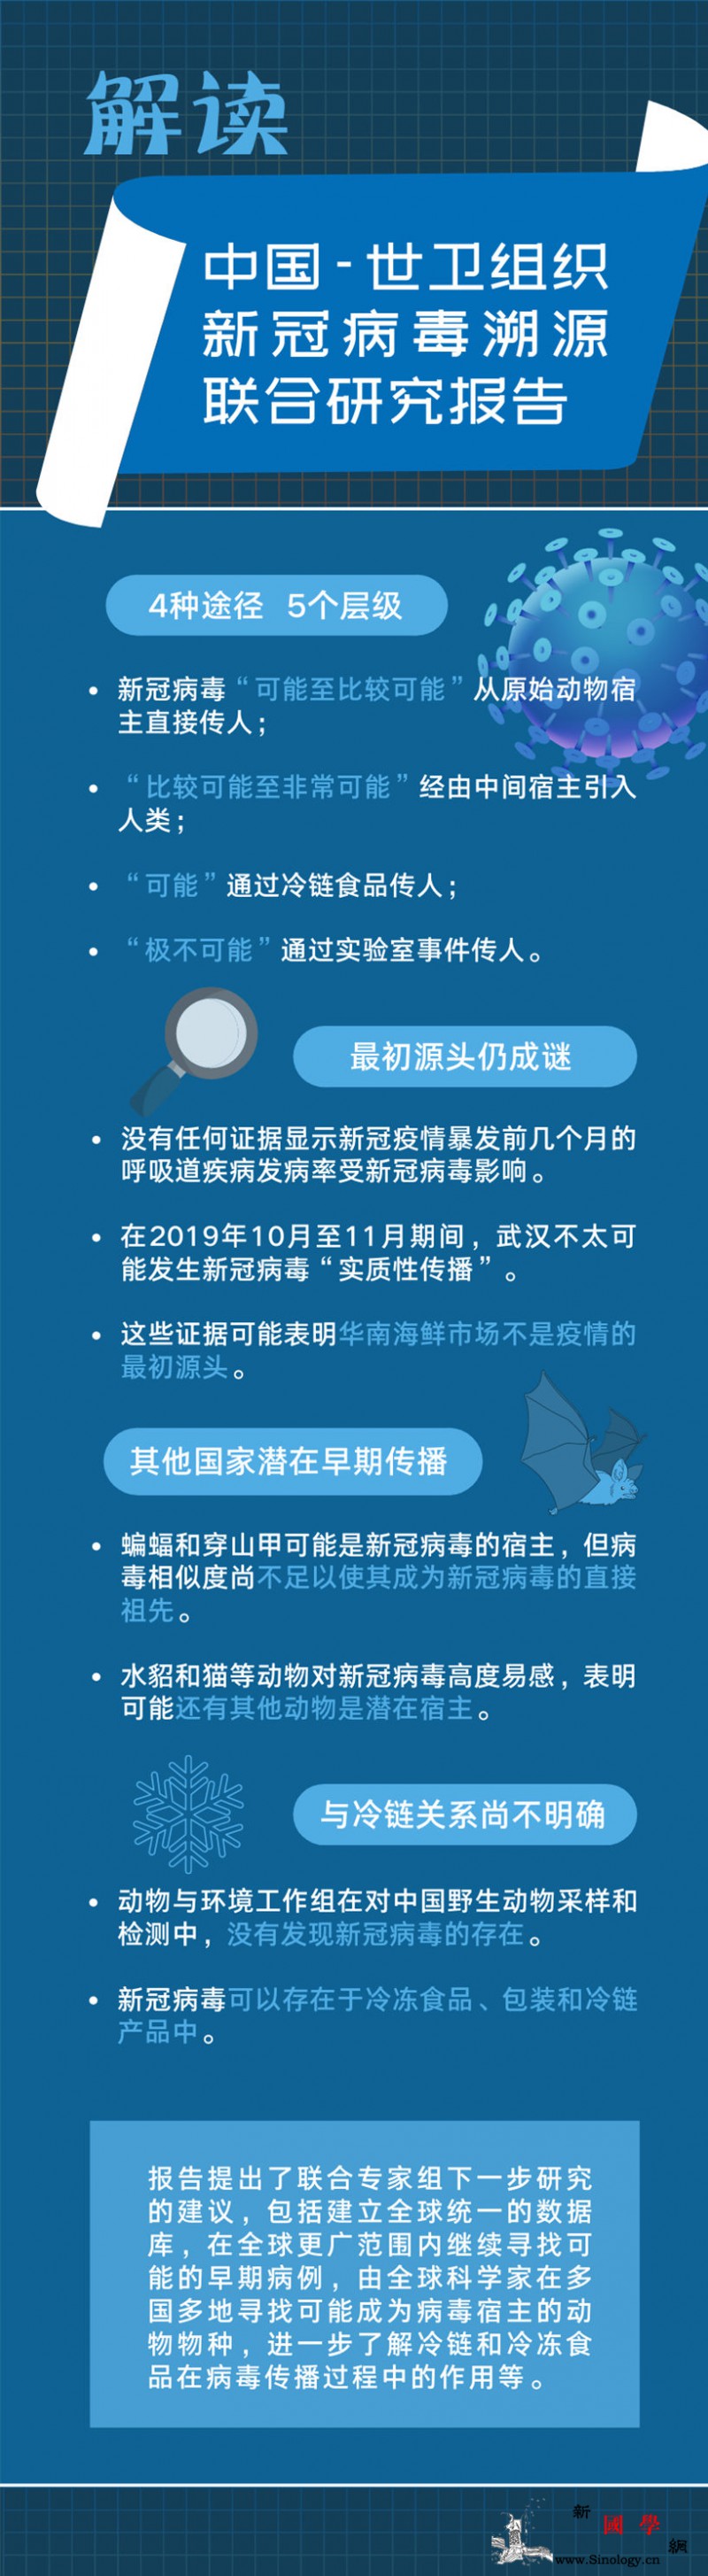 一图读懂中国-世卫组织新冠病dupo_溯源-研究报告-读懂-